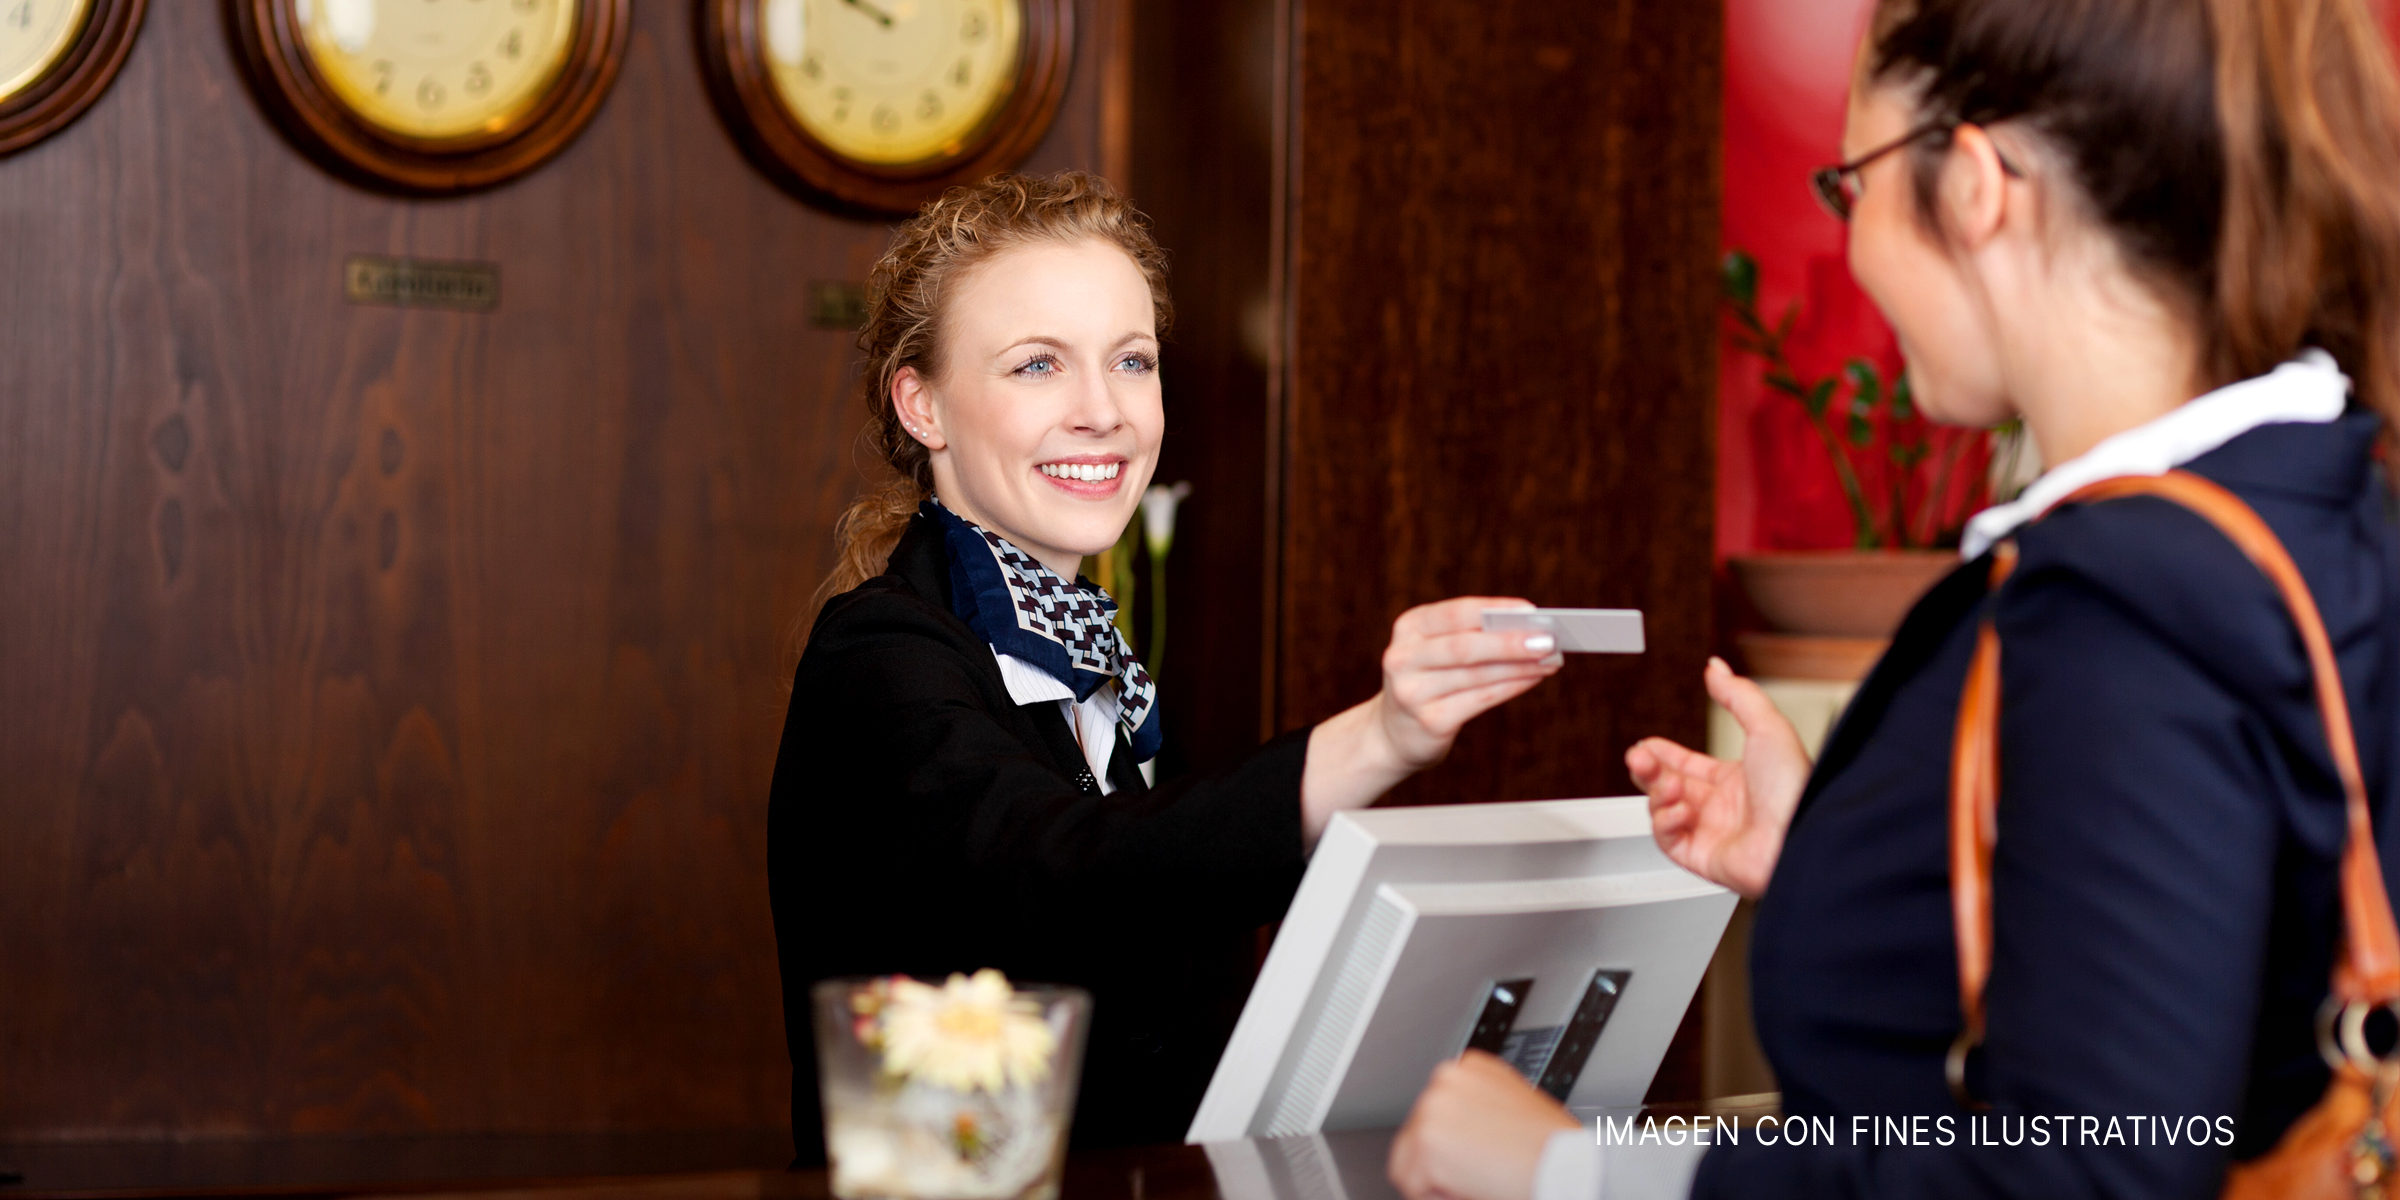 La recepción en un hotel | Foto: Shutterstock